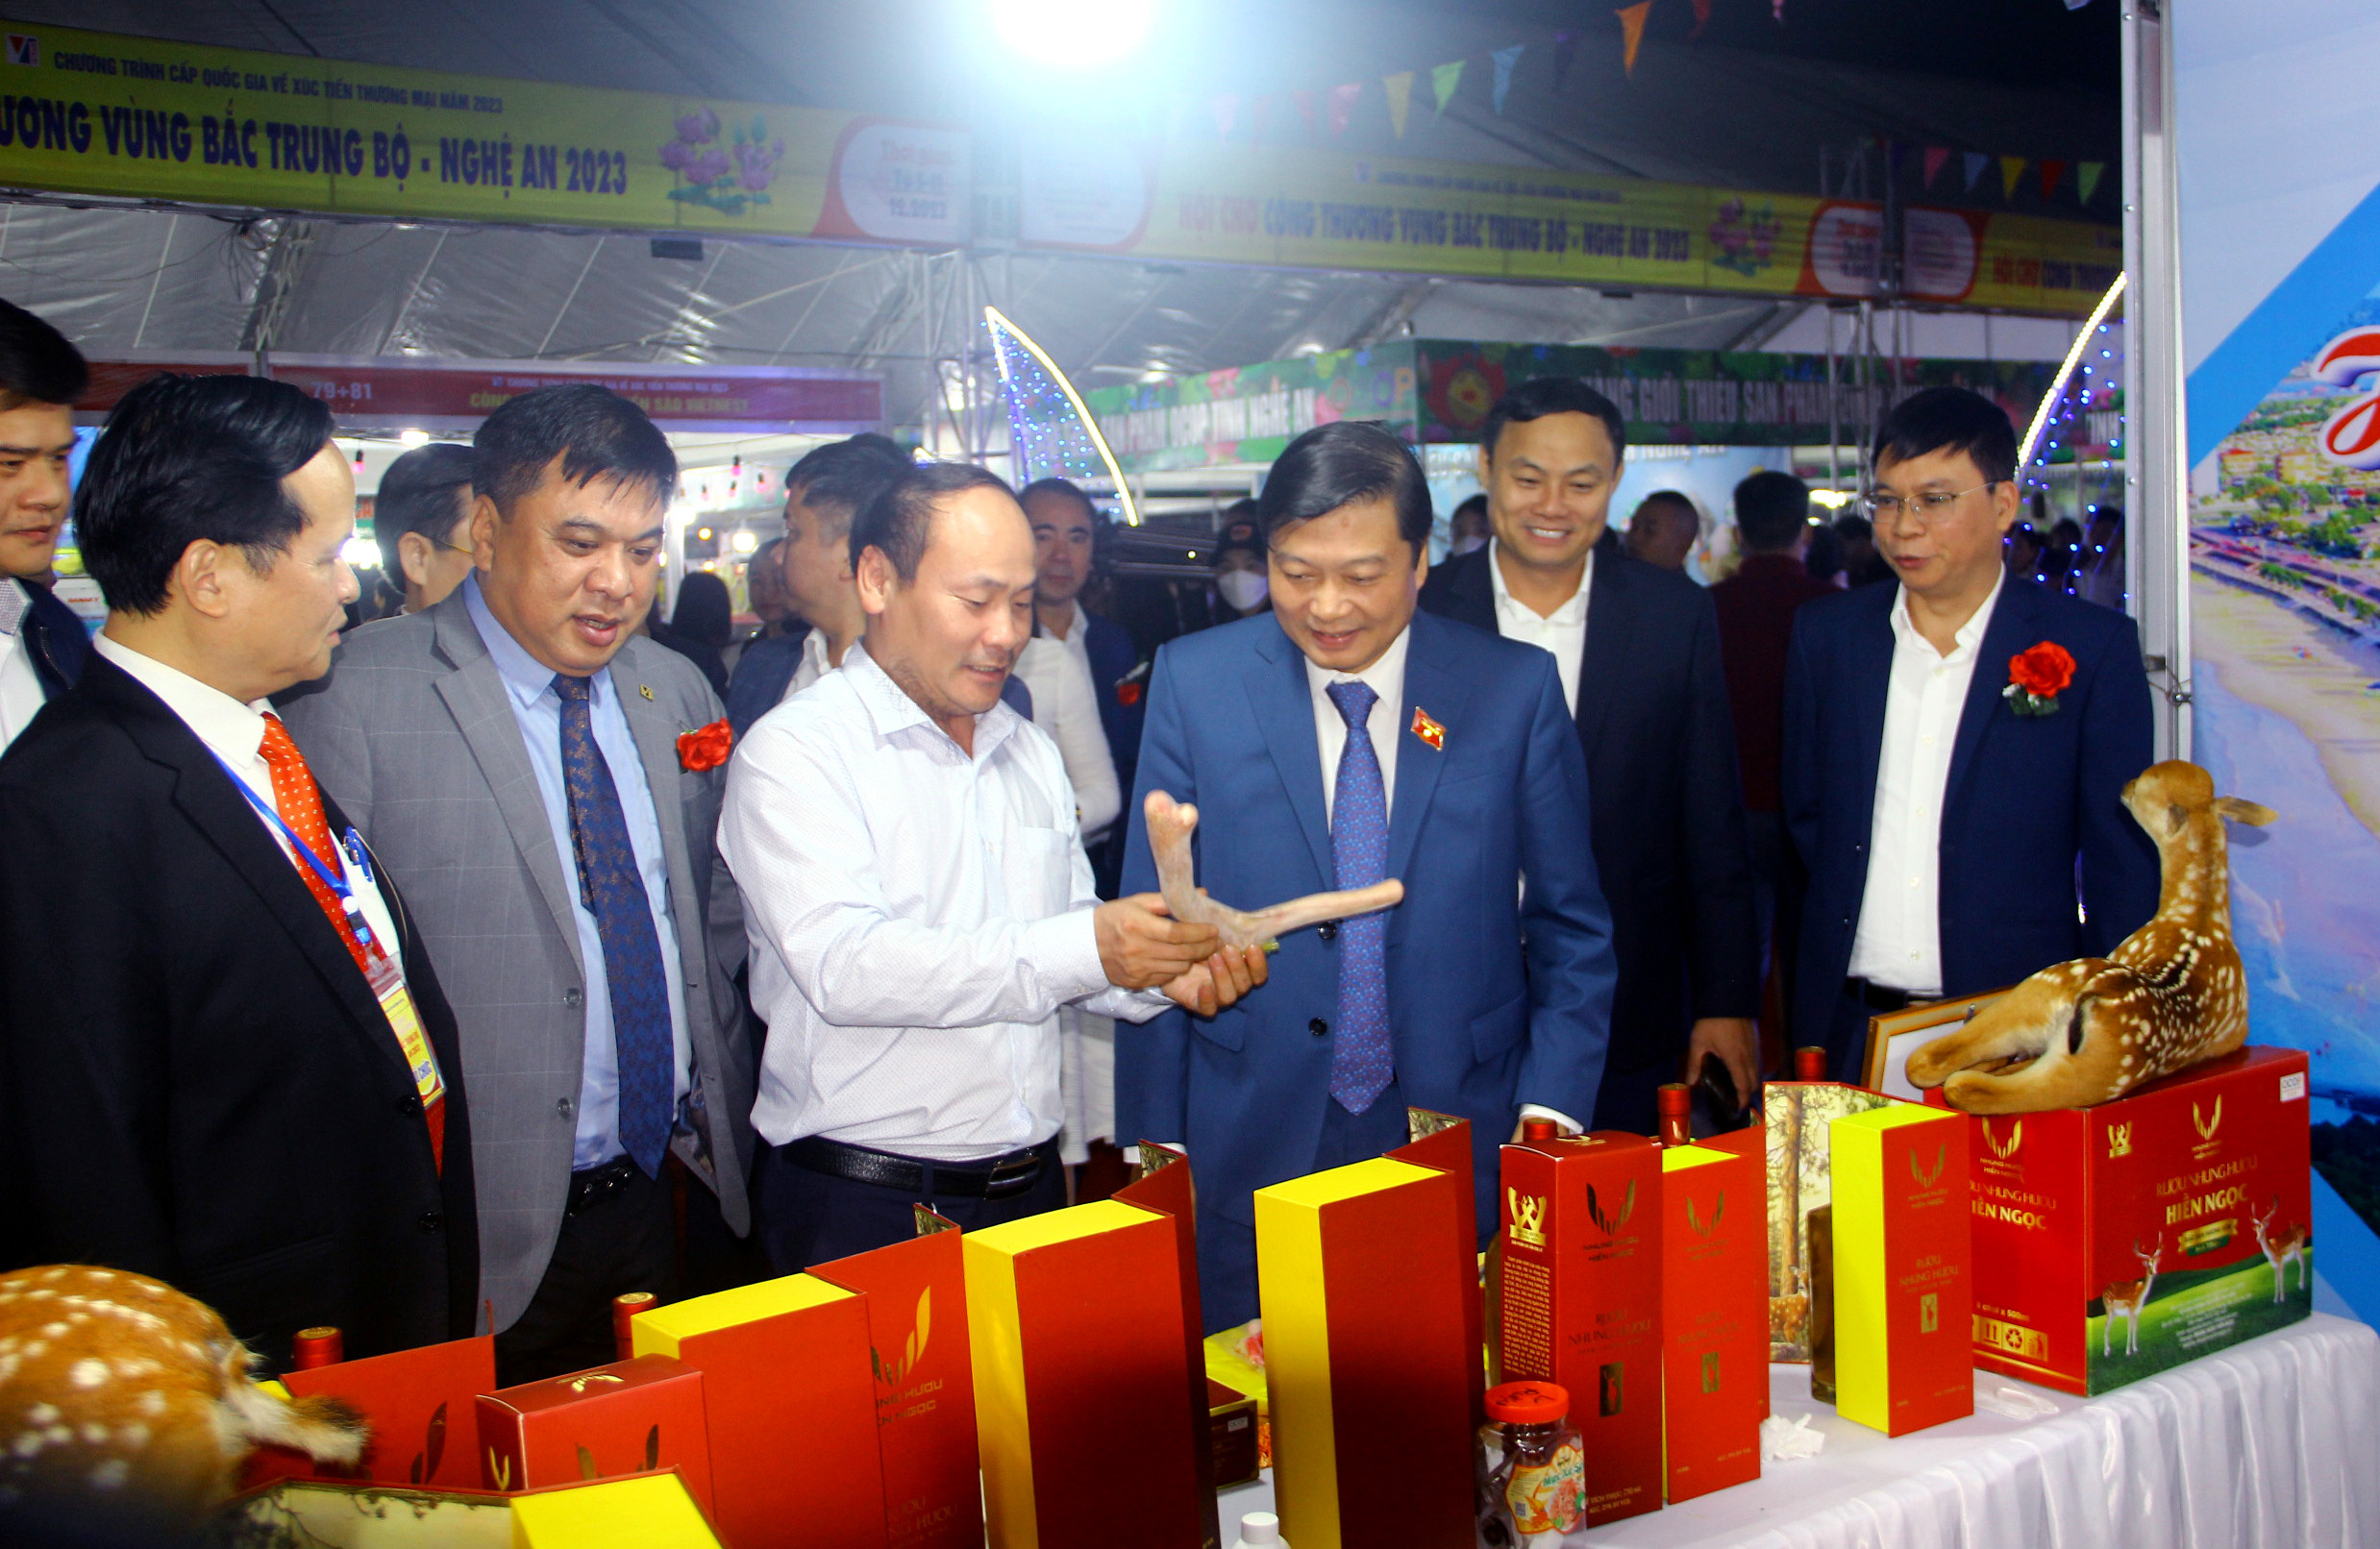 bna_các đại biểu tham quan các gian hàng tại hội chợ ảnh Quang An.jpg